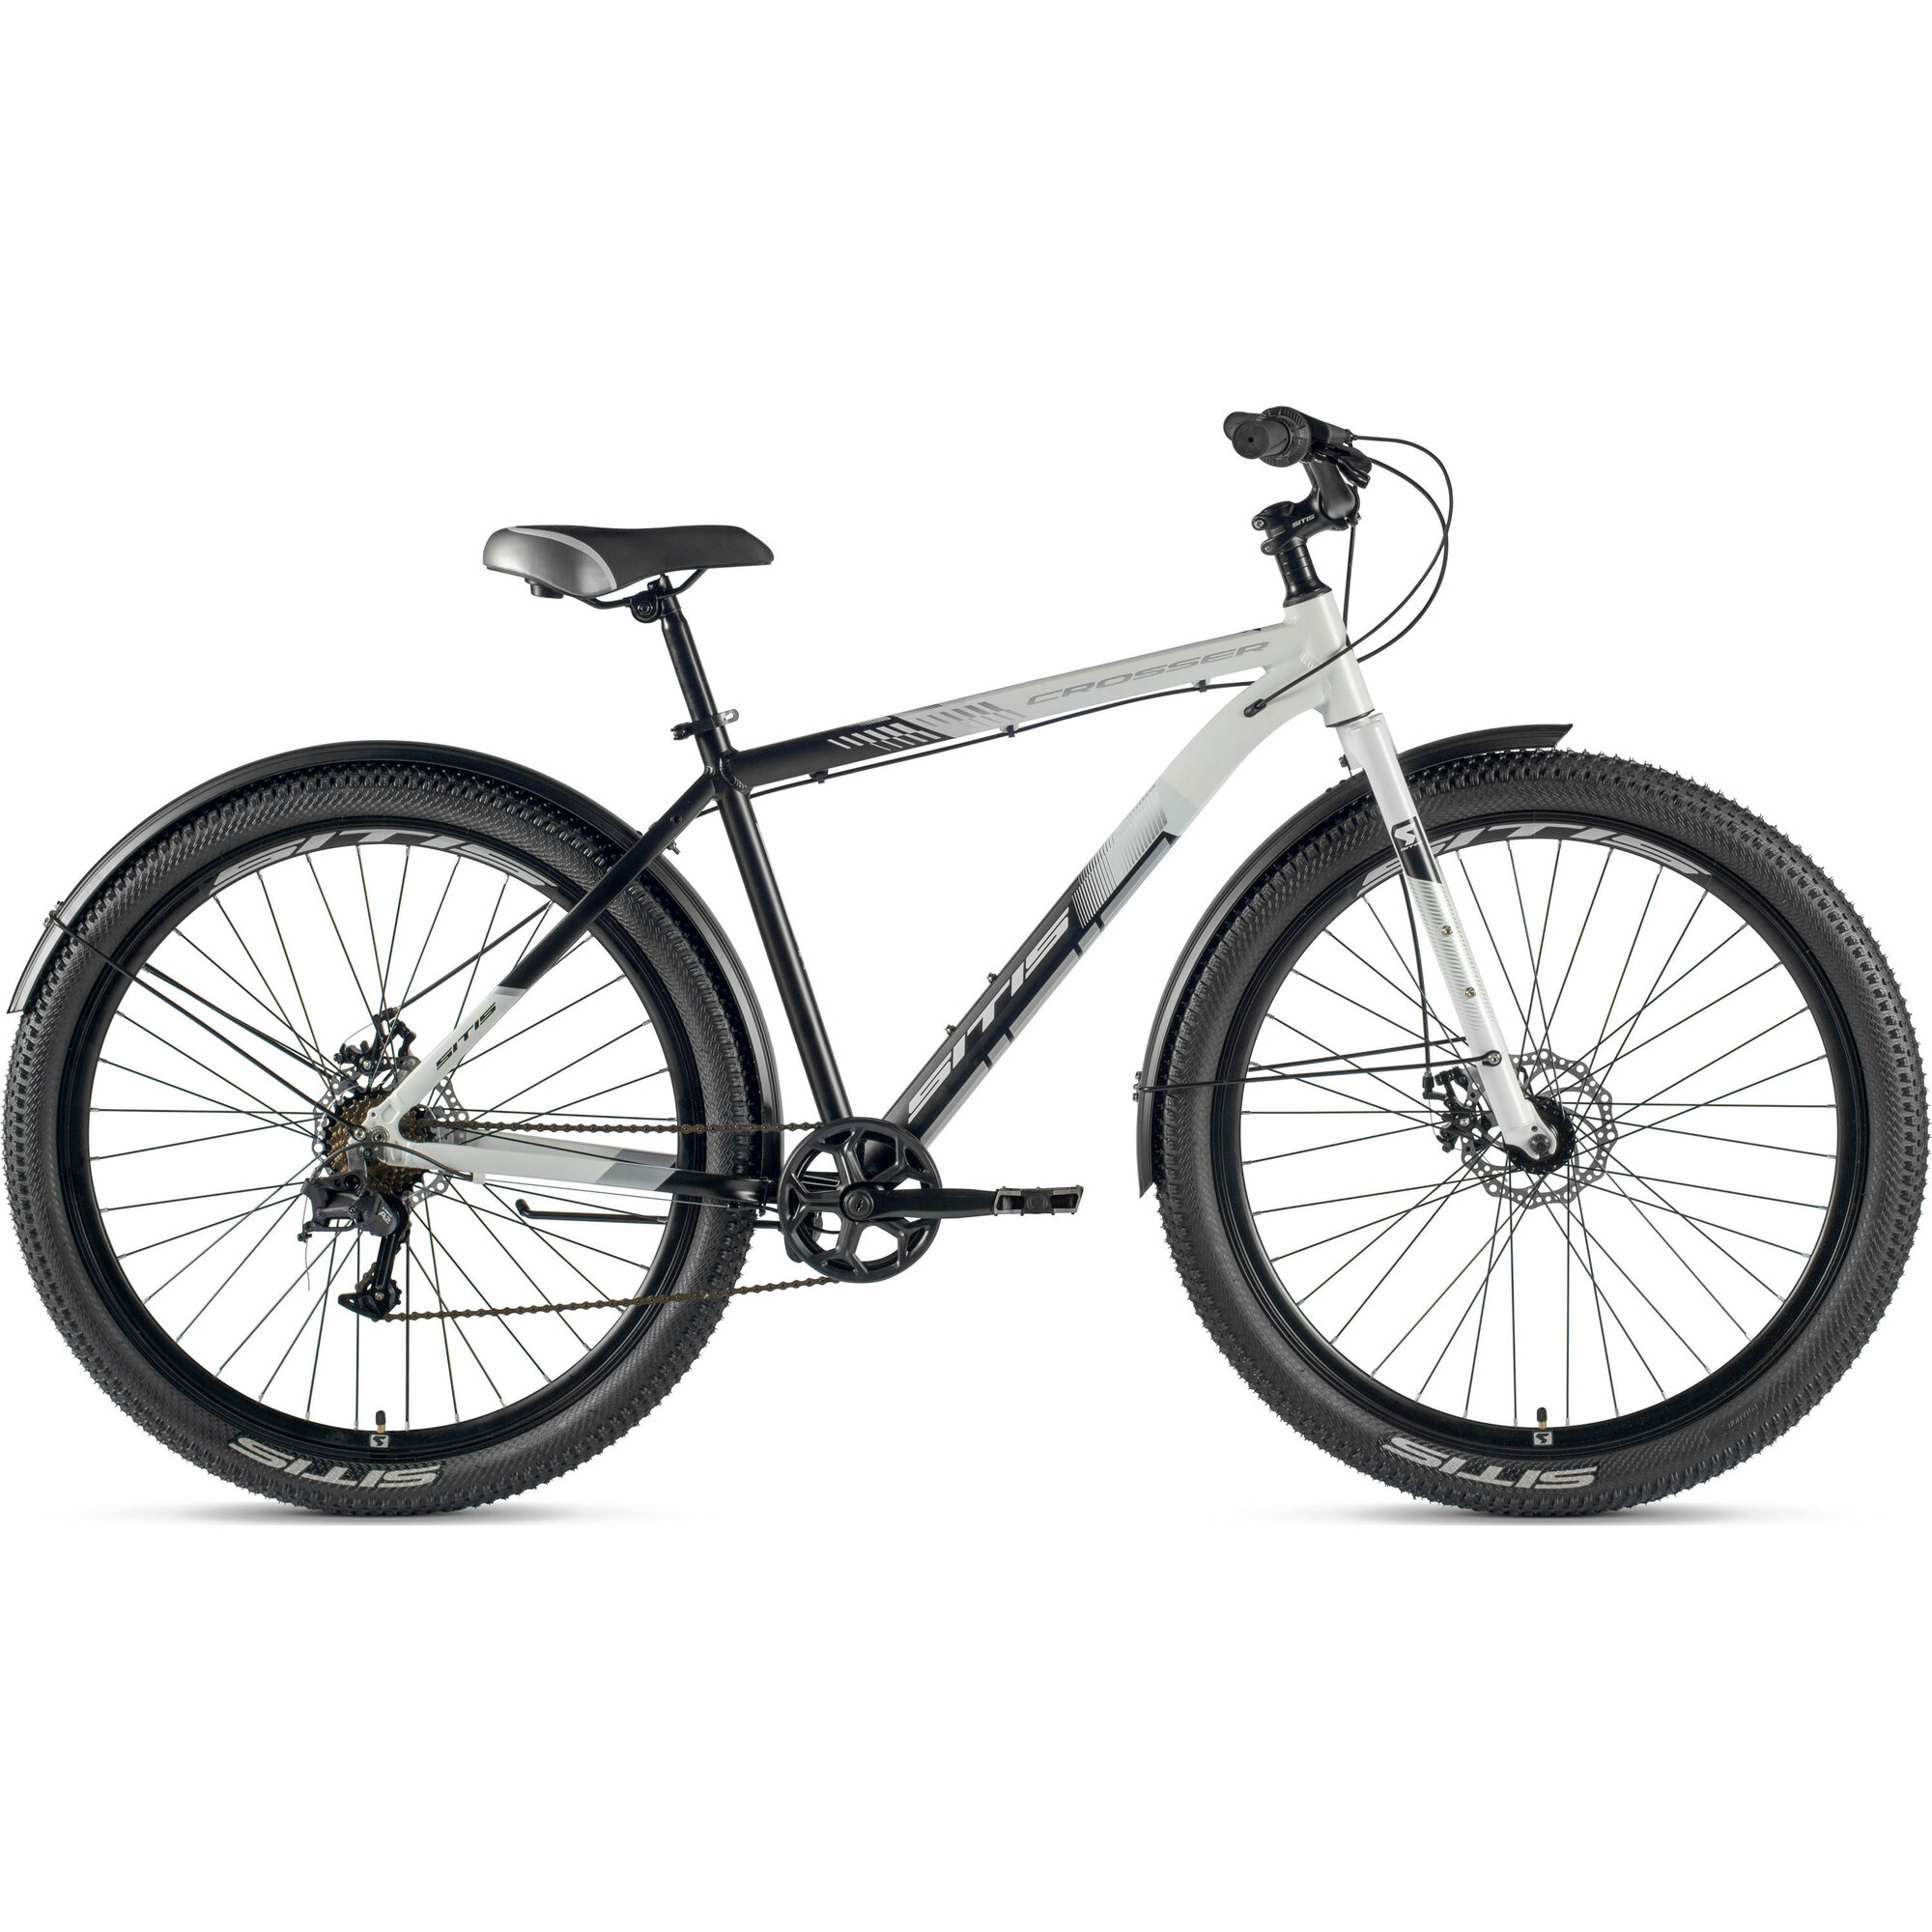 Велосипед городской SITIS CROSSER Rigid SCR29MD 29" (2024), хардтейл, ригид, взрослый, мужской, алюминиевая рама, 7 скоростей, дисковые механические тормоза, цвет White-Black-Grey, белый/черный/серый цвет, размер рамы 21", для роста 185-195 см